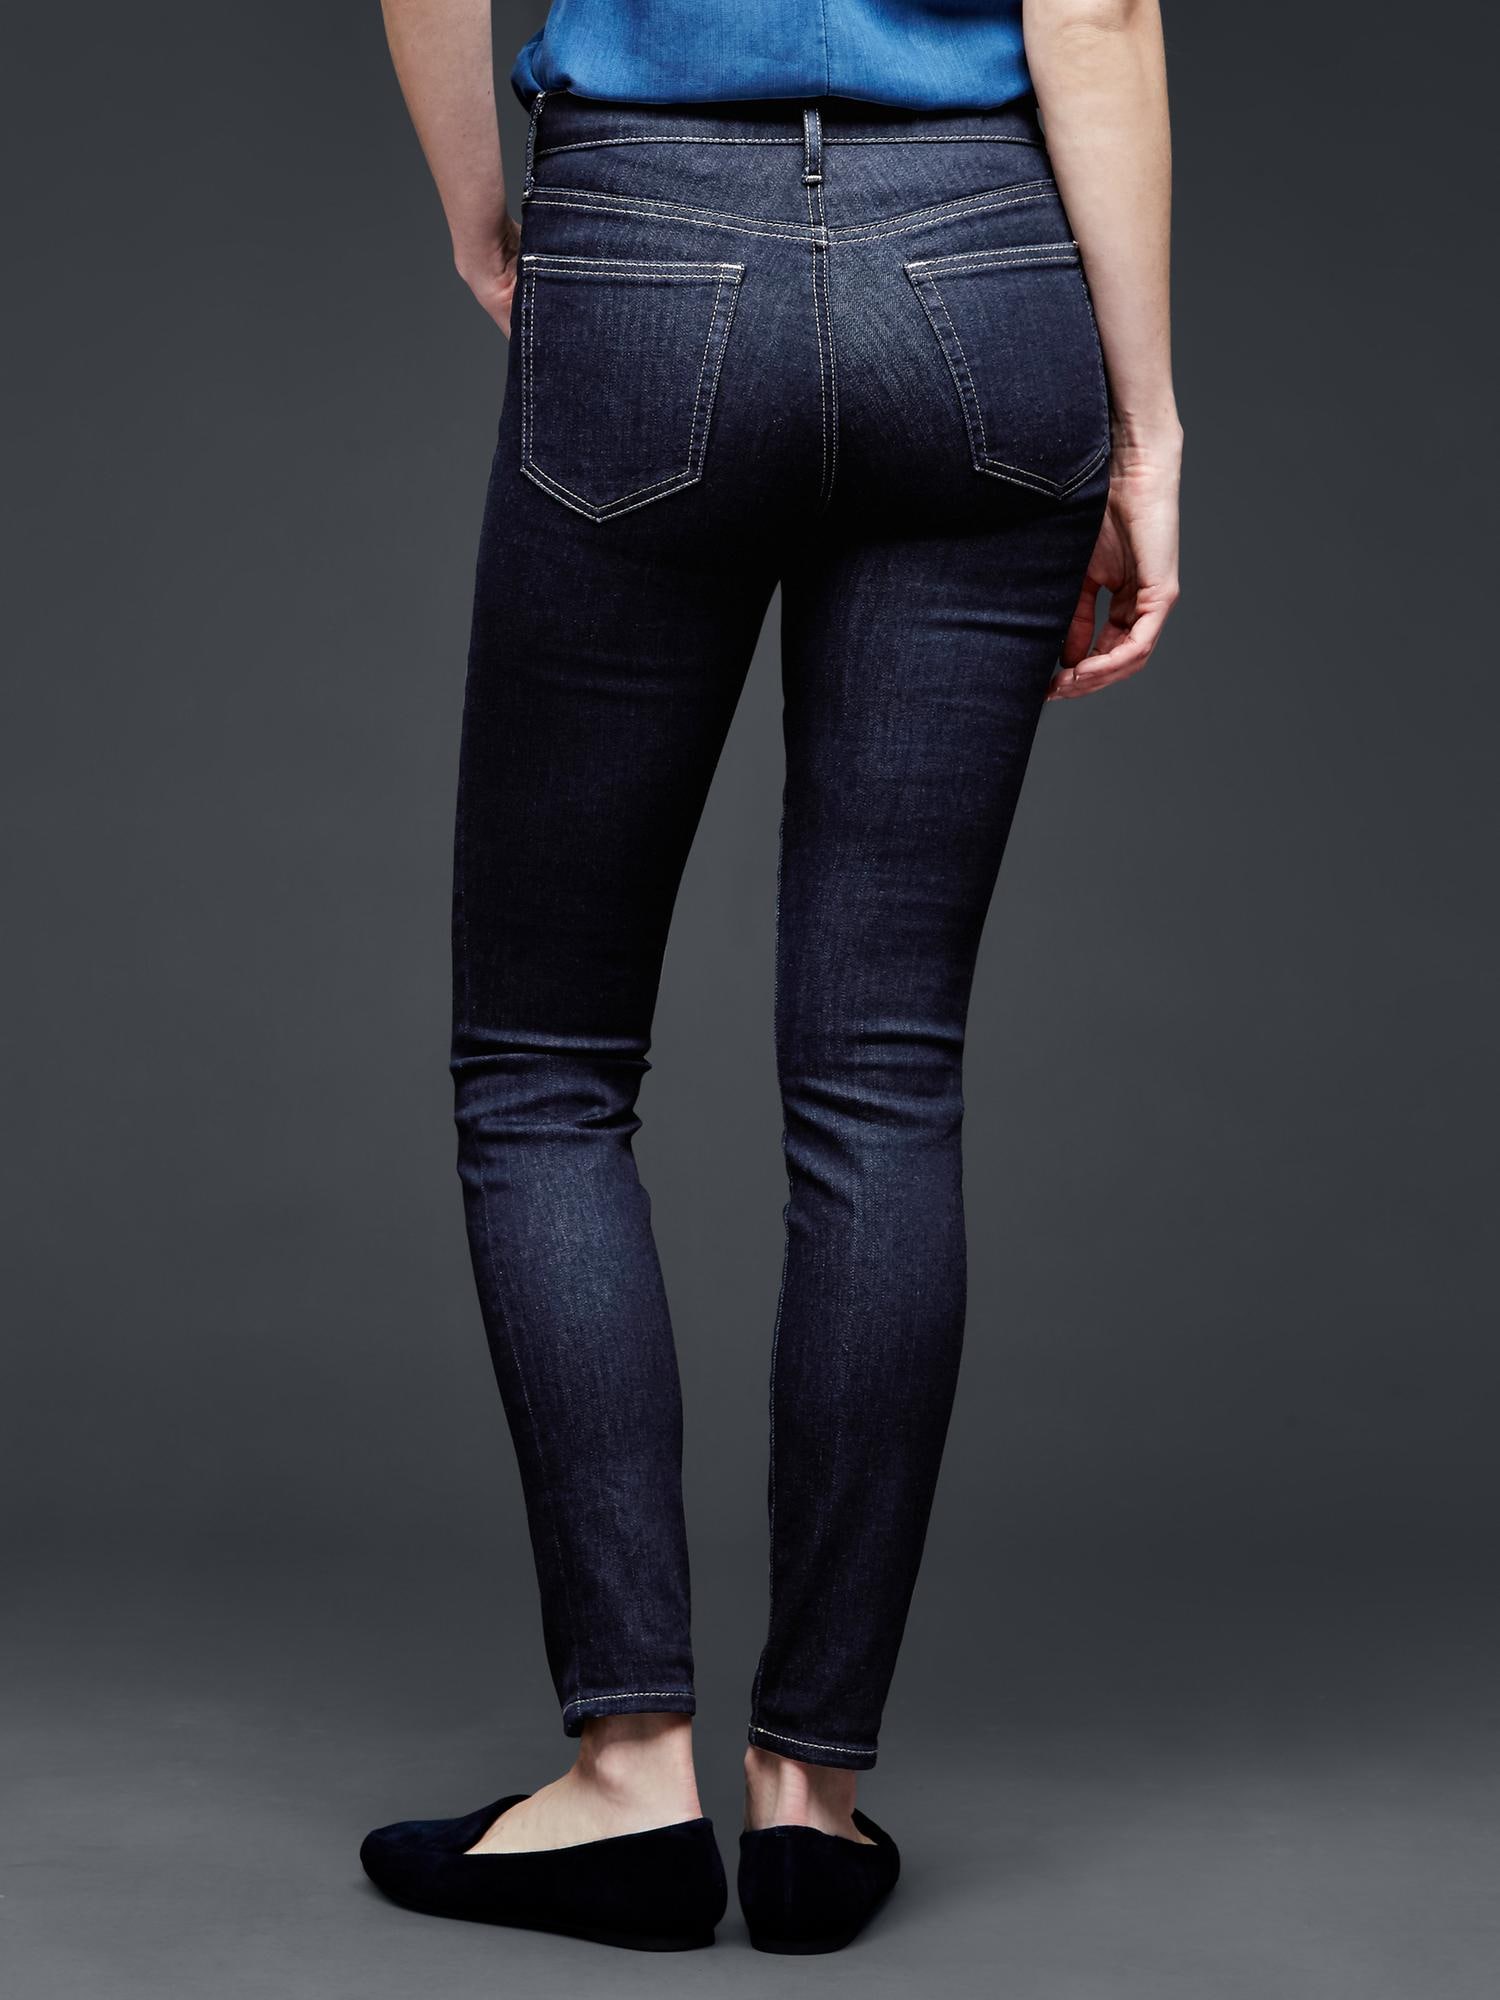 STRETCH 1969 true skinny high rise jeans | Gap